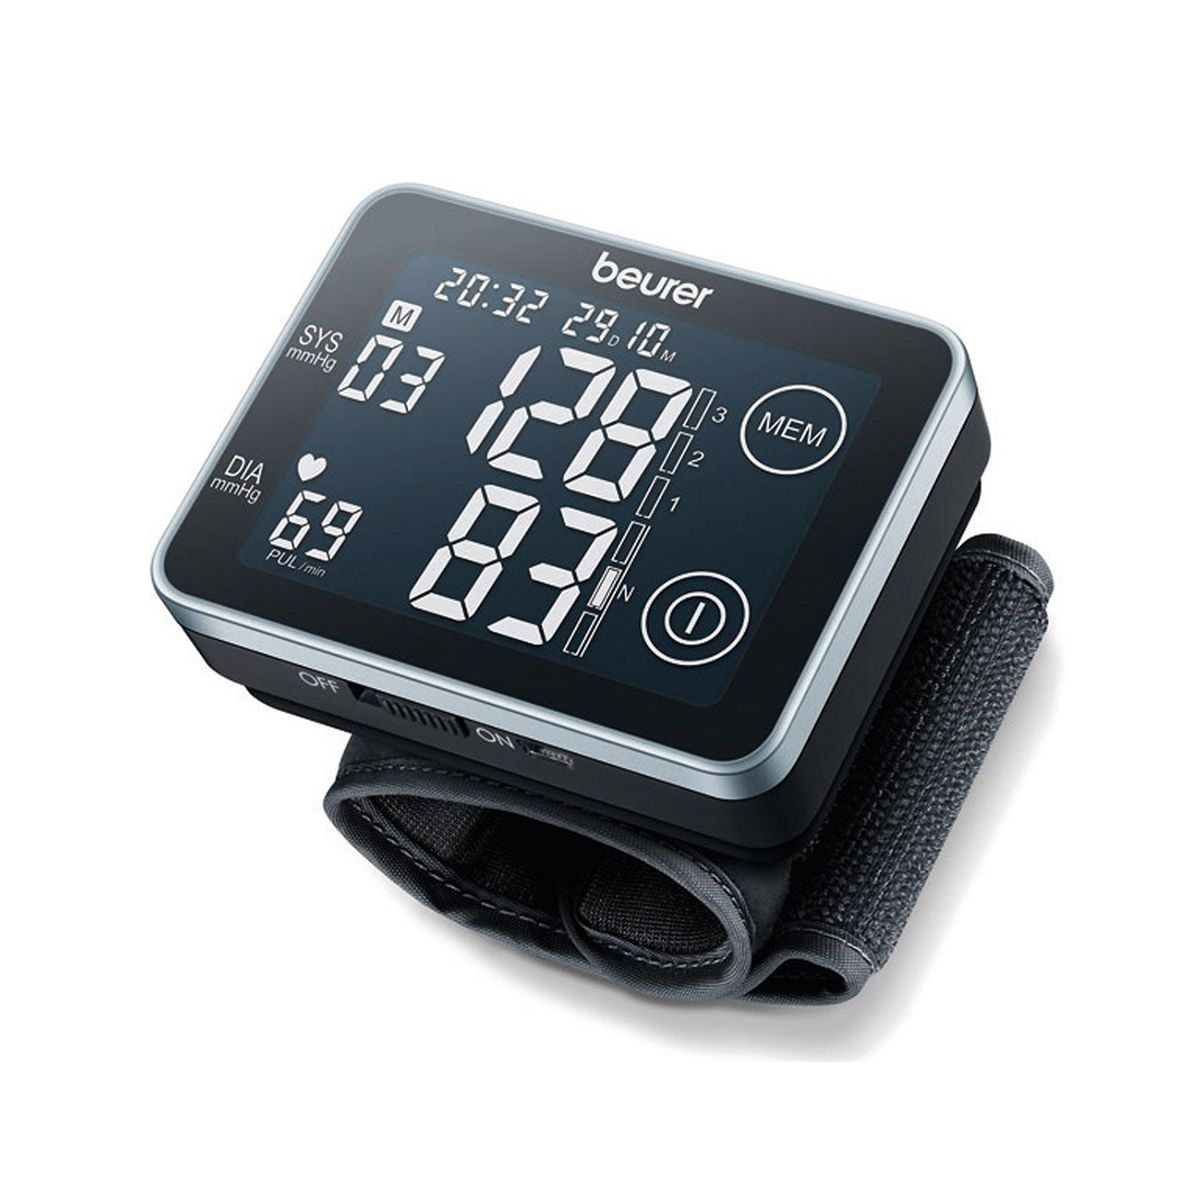 جهاز قياس ضغط الدم من المعصم شاشة تعمل باللمس BC 58